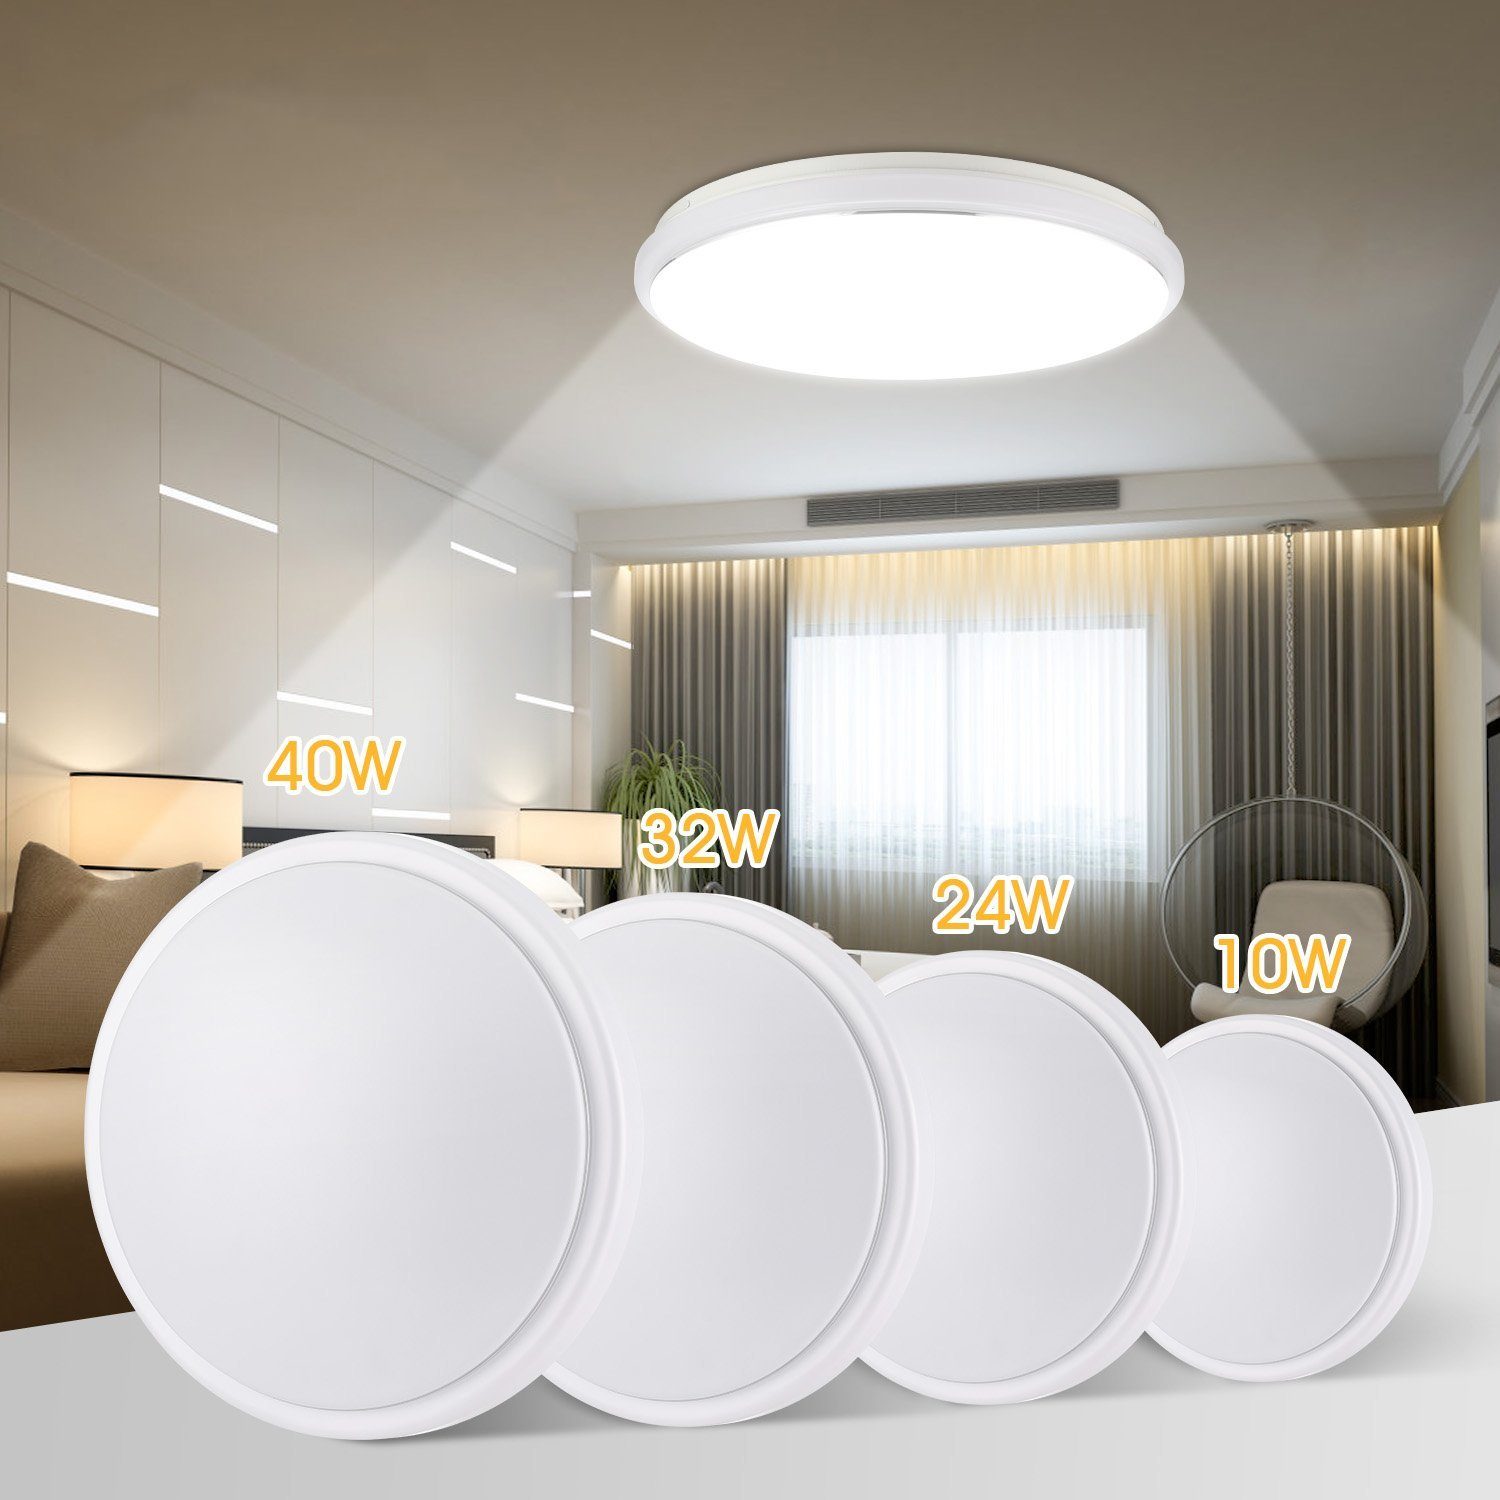 LETGOSPT Deckenleuchte LED Deckenleuchte Flach Rund Deckenlampe Modern Weiß 6000K Led Lampen, LED fest integriert, Kaltweiß, IP44 Wasserdicht, für Badezimmer Schlafzimmer Wohnzimmer Küche Balkon 10W (20 x 20 x 7,5 cm)